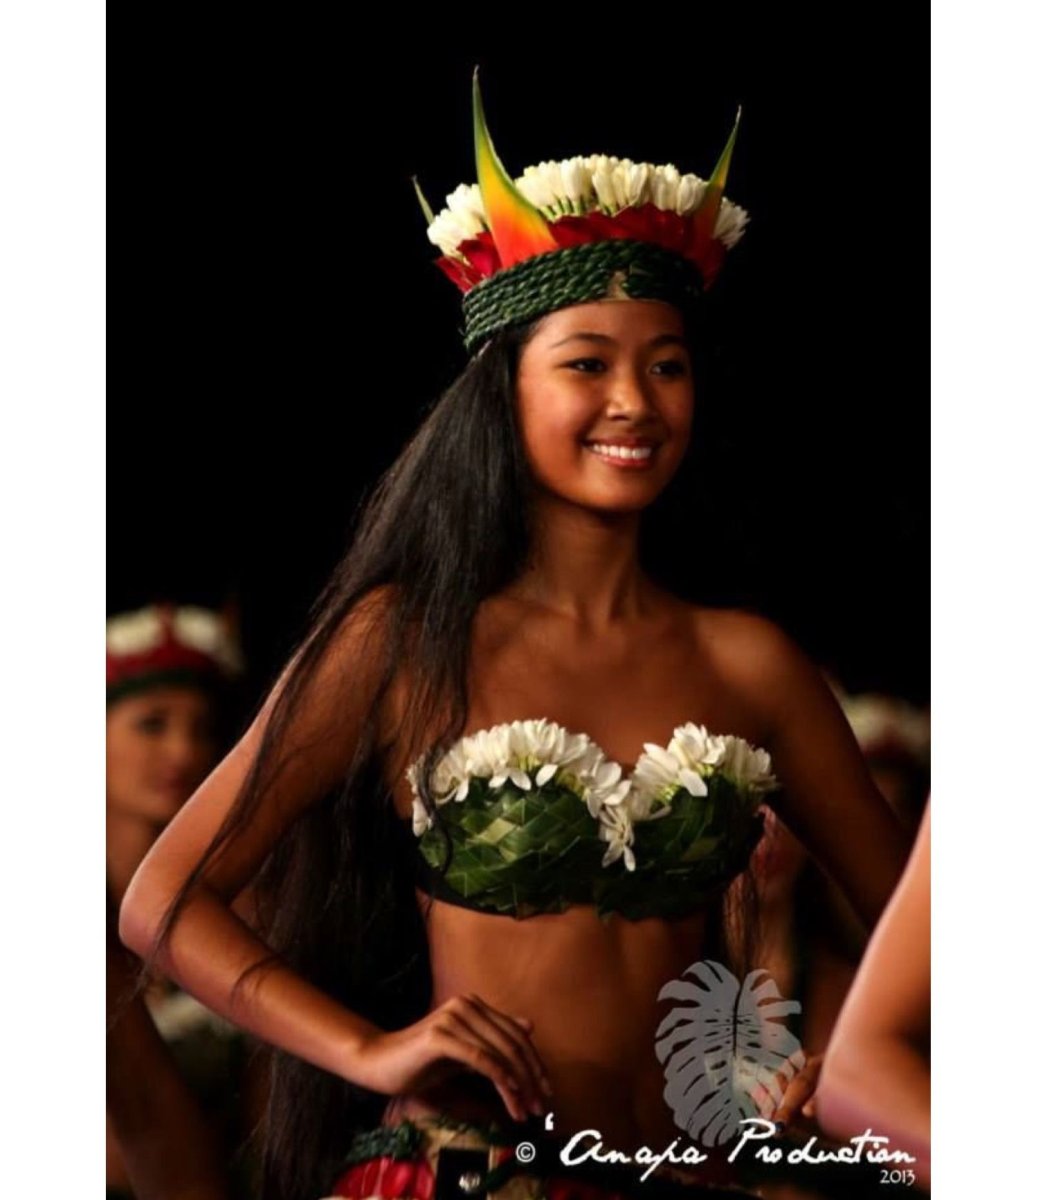 Французская Полинезия Таити девушки